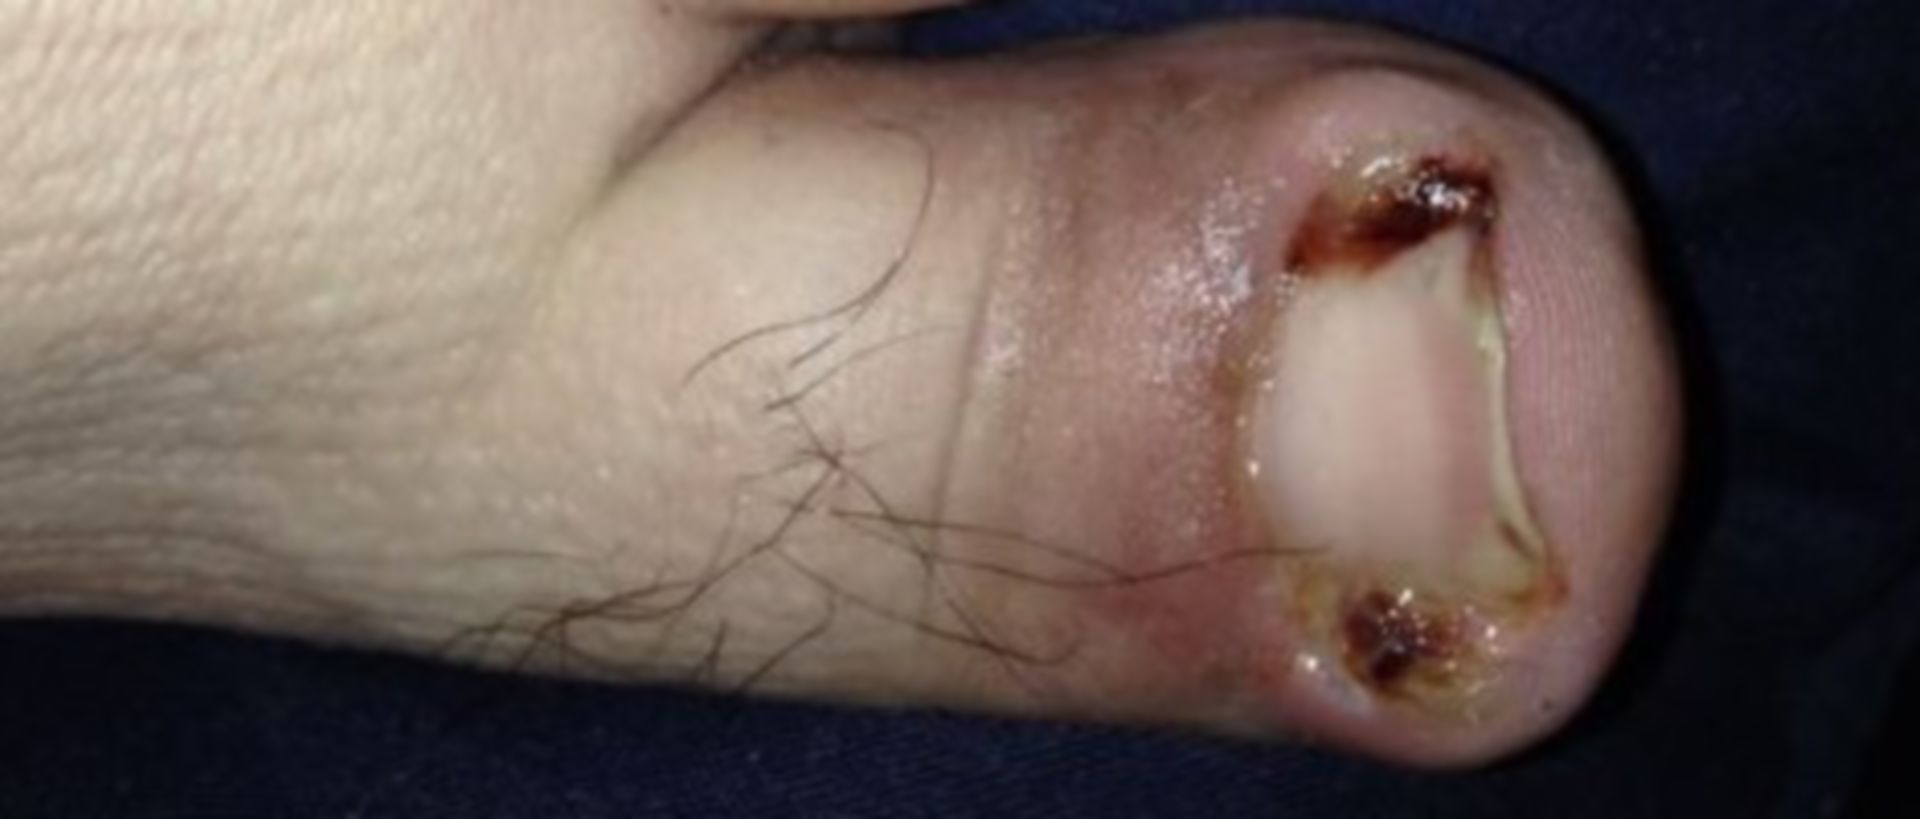 Infektion eines Zehs mit eingewachsenem Zehennagel